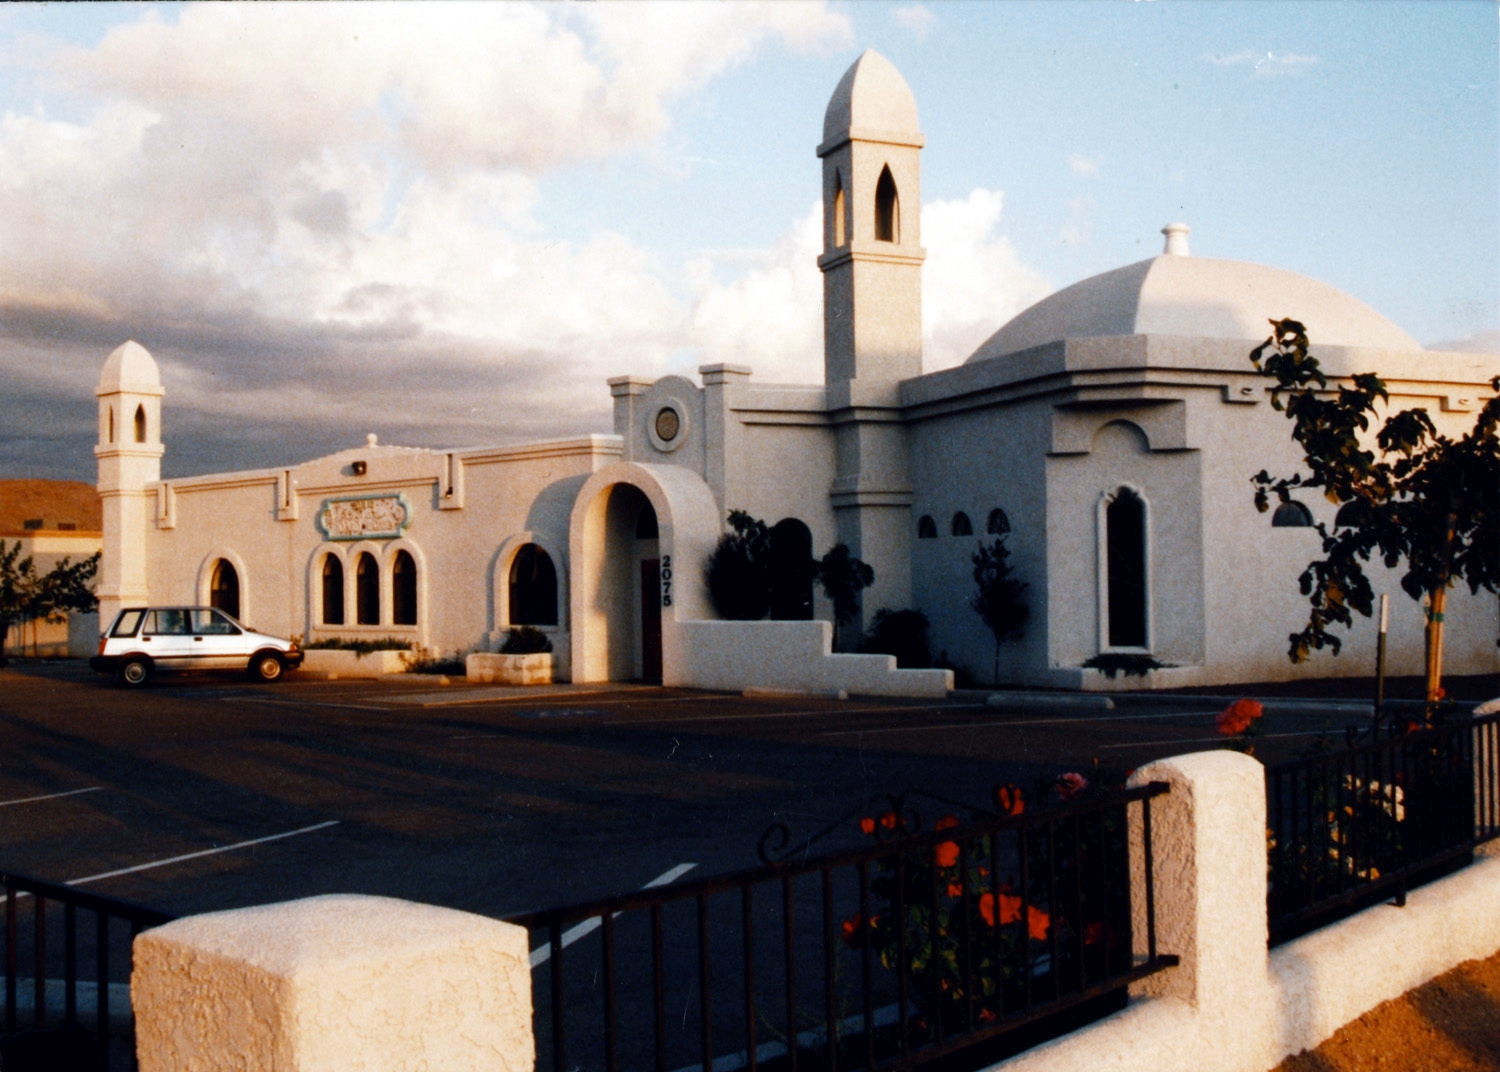 Masjid Ibrahim